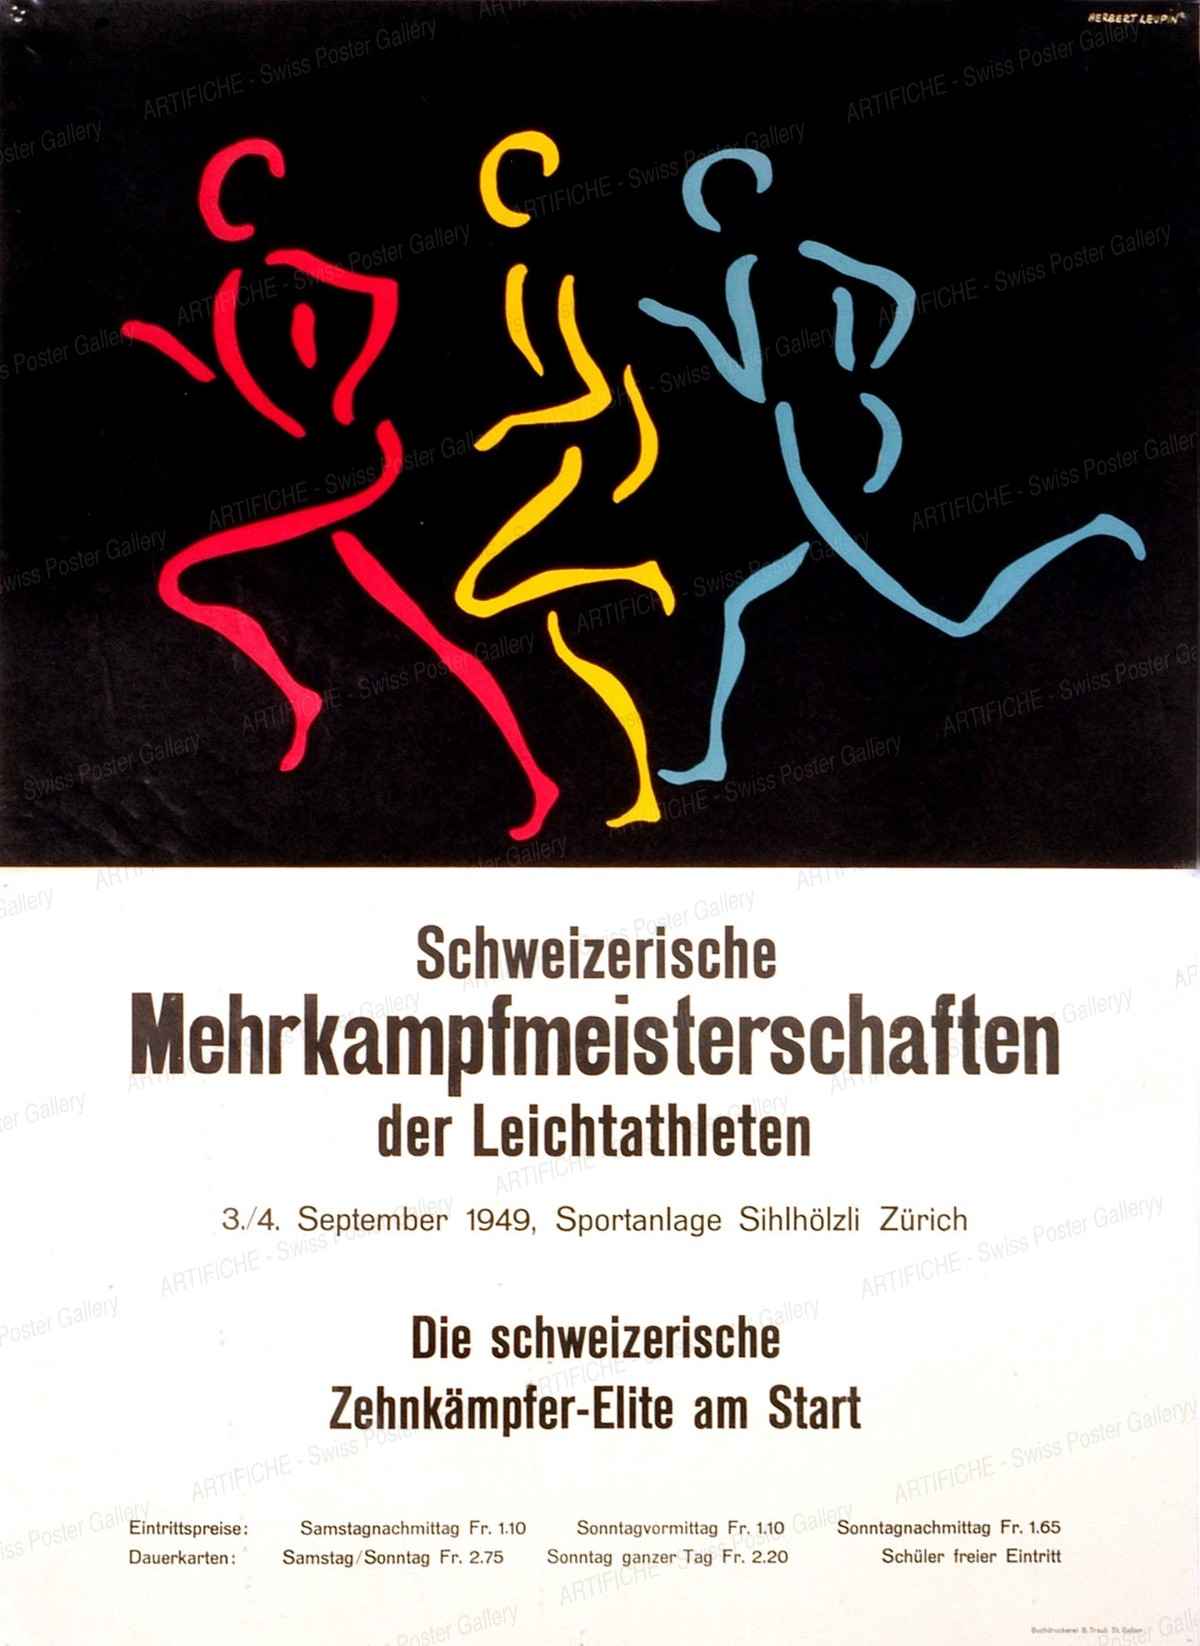 Schweizerische Mehrkampfmeisterschaften der Leichtathleten – 1949 – Sportanlage Sihlhölzli Zürich, Herbert Leupin